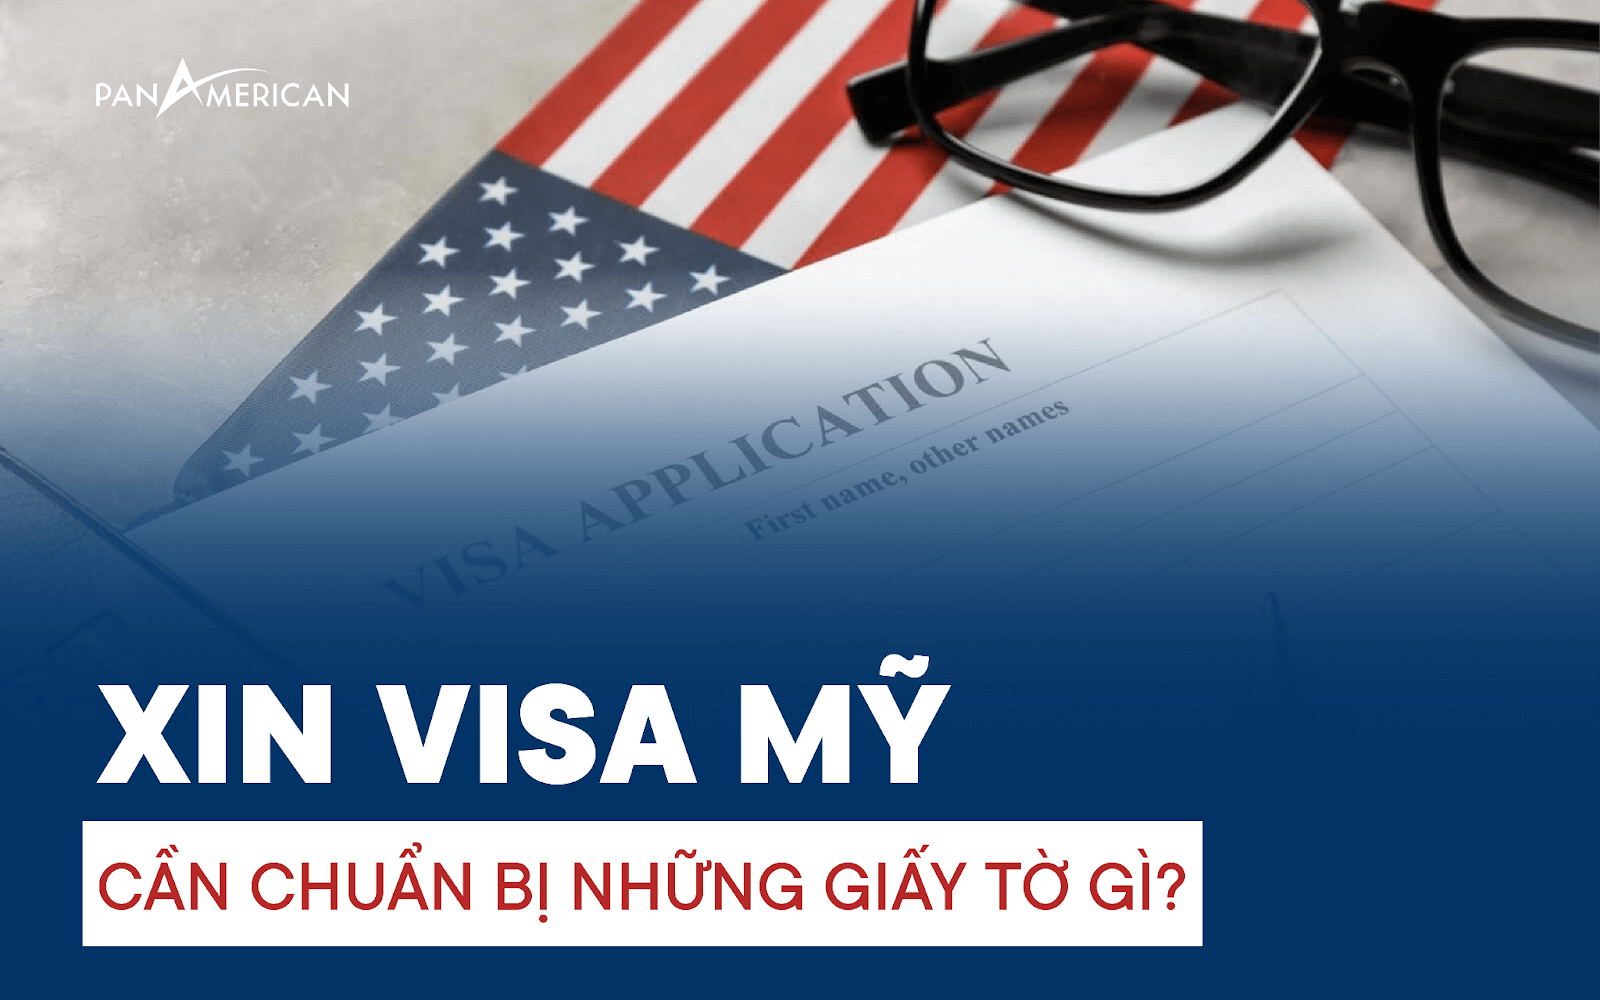 xin visa my can nhung gi